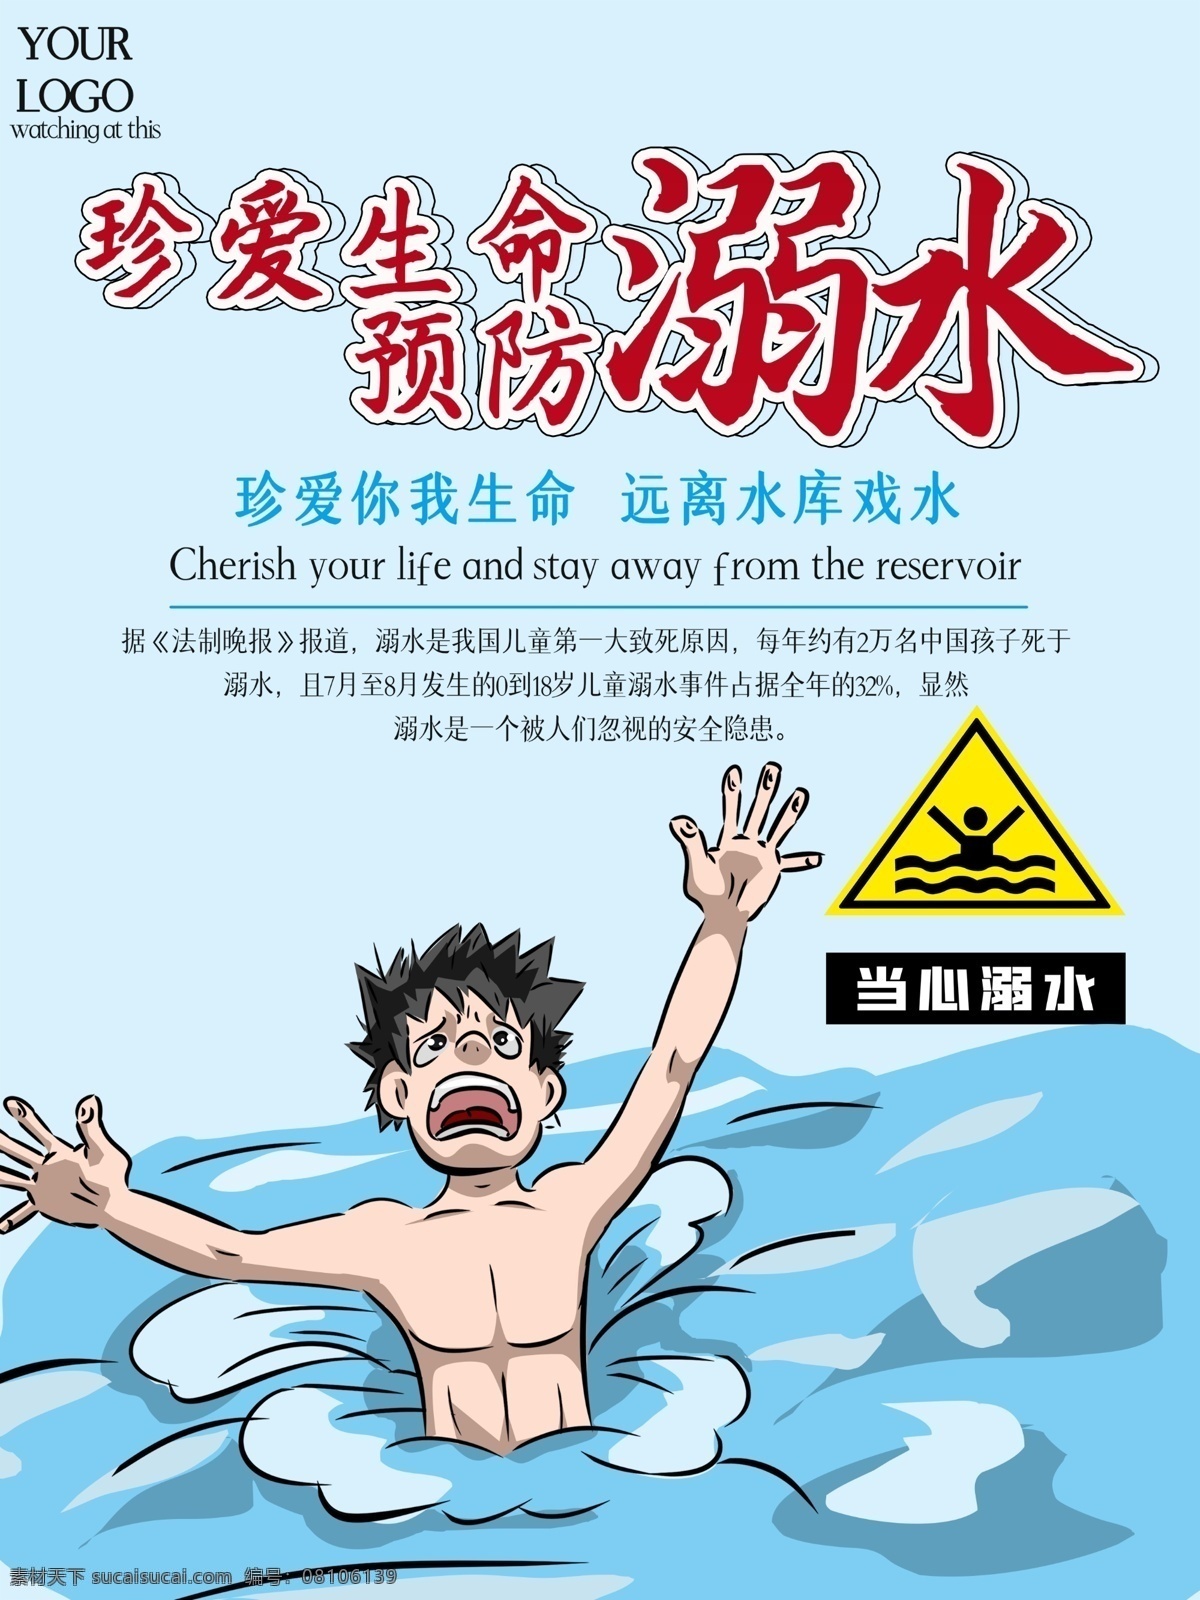 防溺水宣传 防溺水 珍爱生命 警示标 蓝色 水 分层